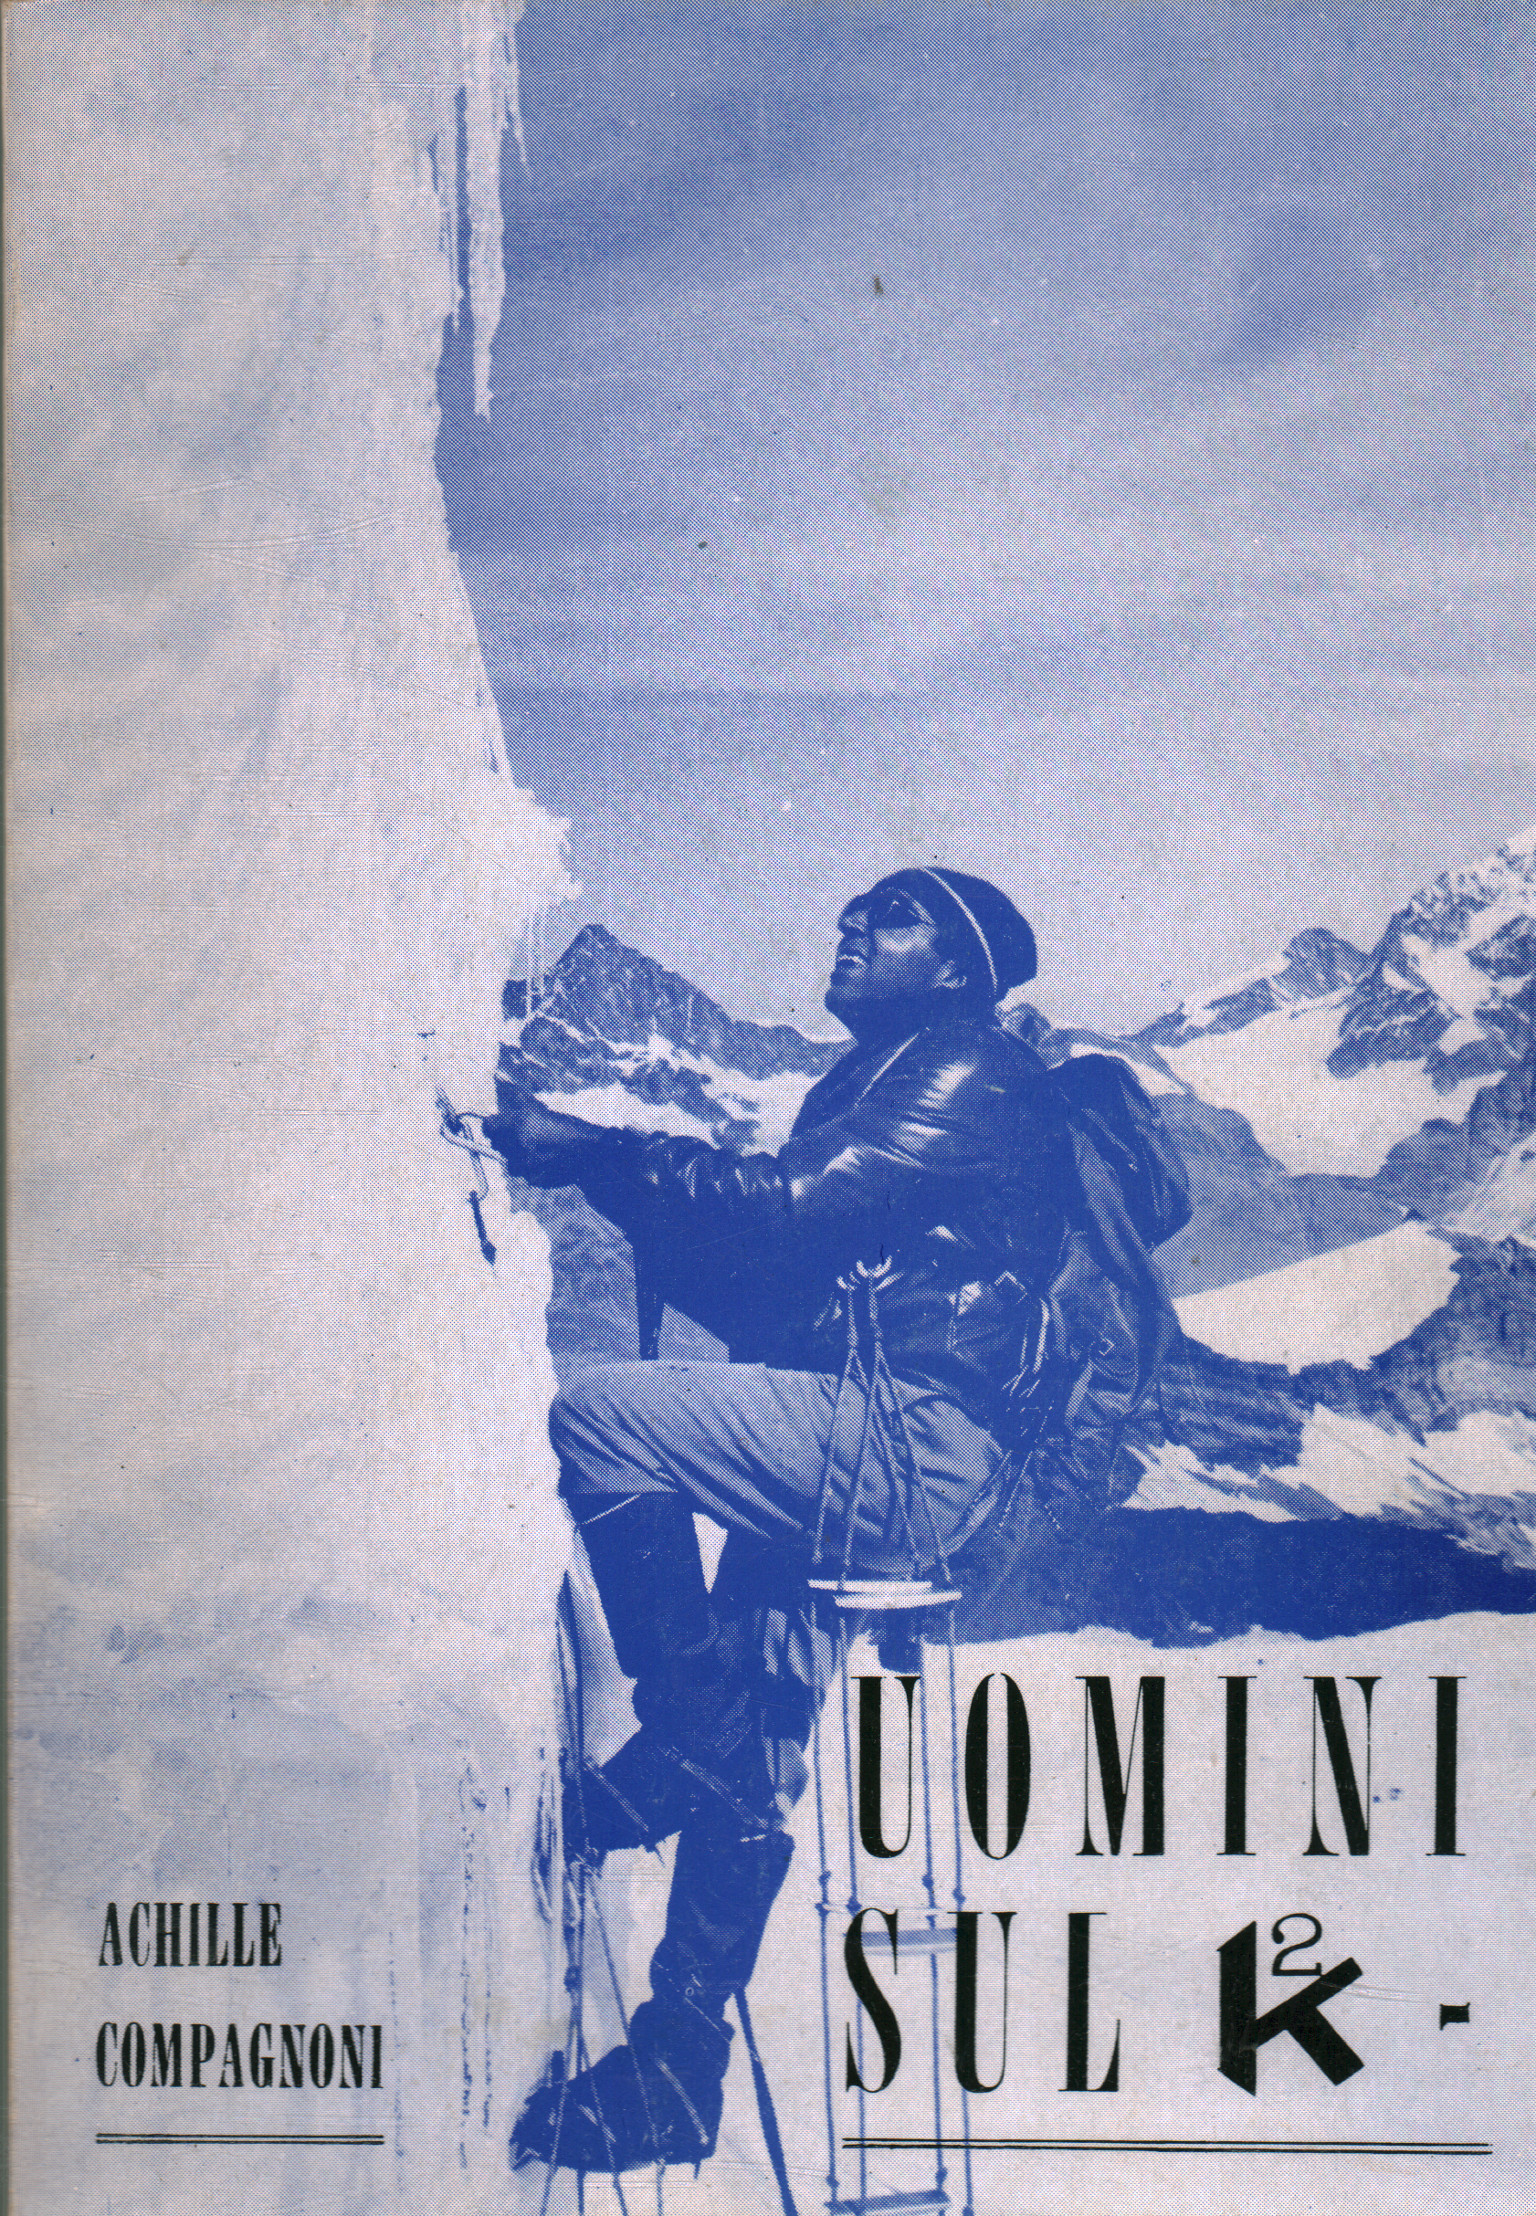 Hombres en K2, Achille Compagnoni